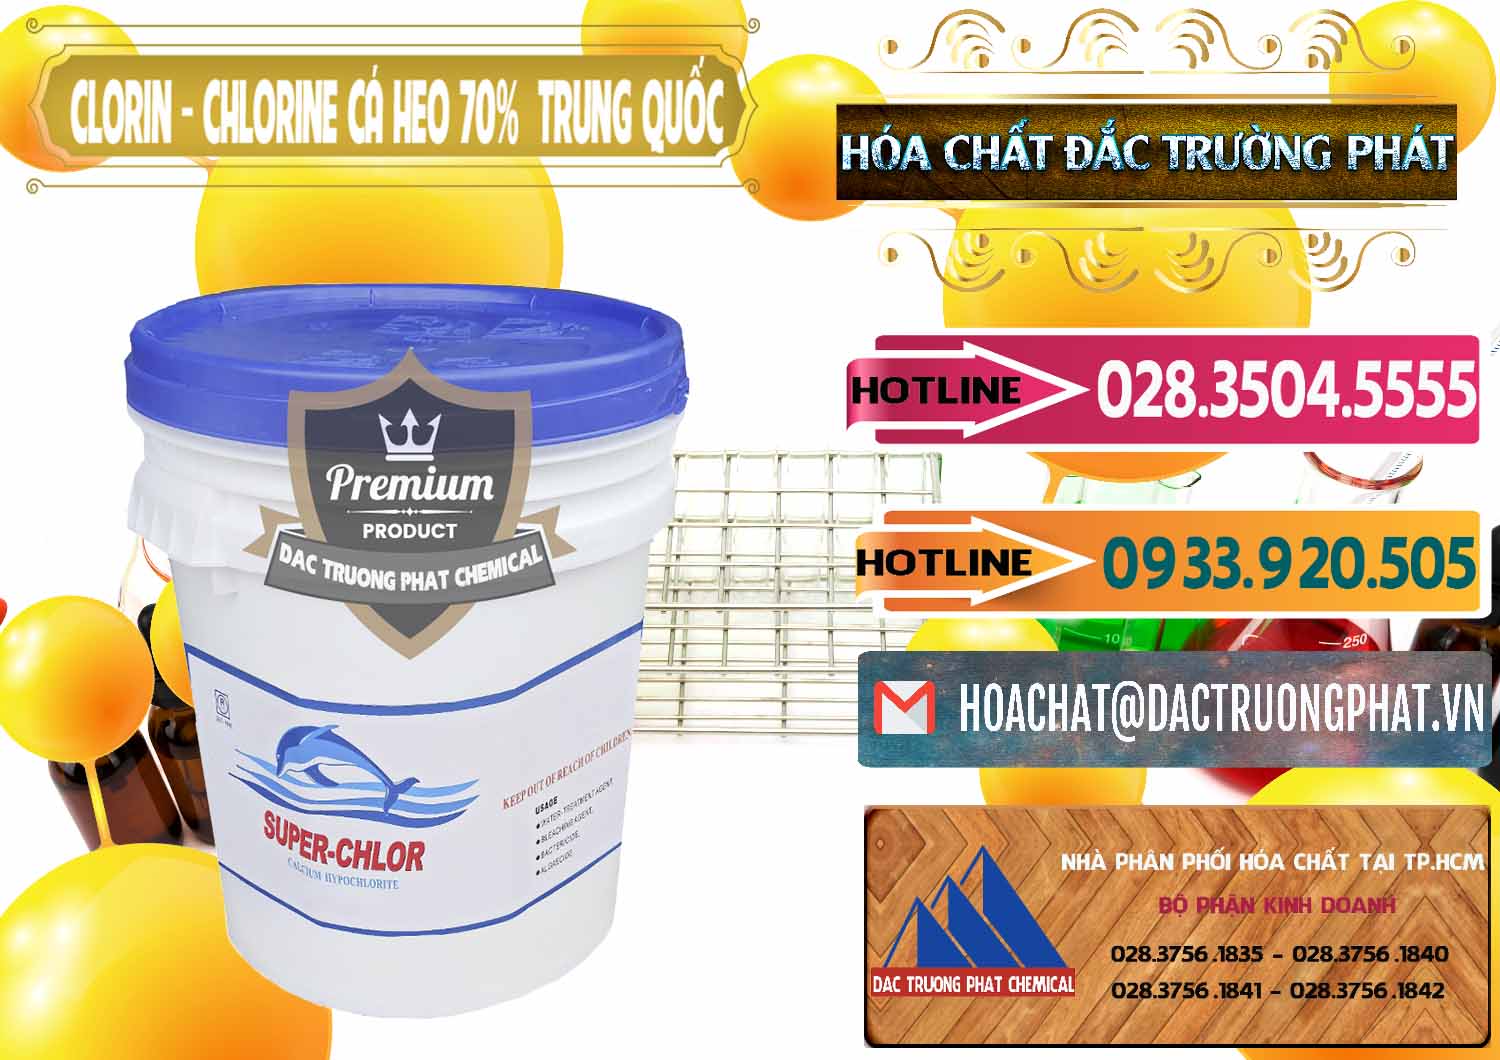 Cty nhập khẩu _ bán Clorin - Chlorine Cá Heo 70% Super Chlor Nắp Xanh Trung Quốc China - 0209 - Công ty chuyên cung cấp _ kinh doanh hóa chất tại TP.HCM - dactruongphat.vn